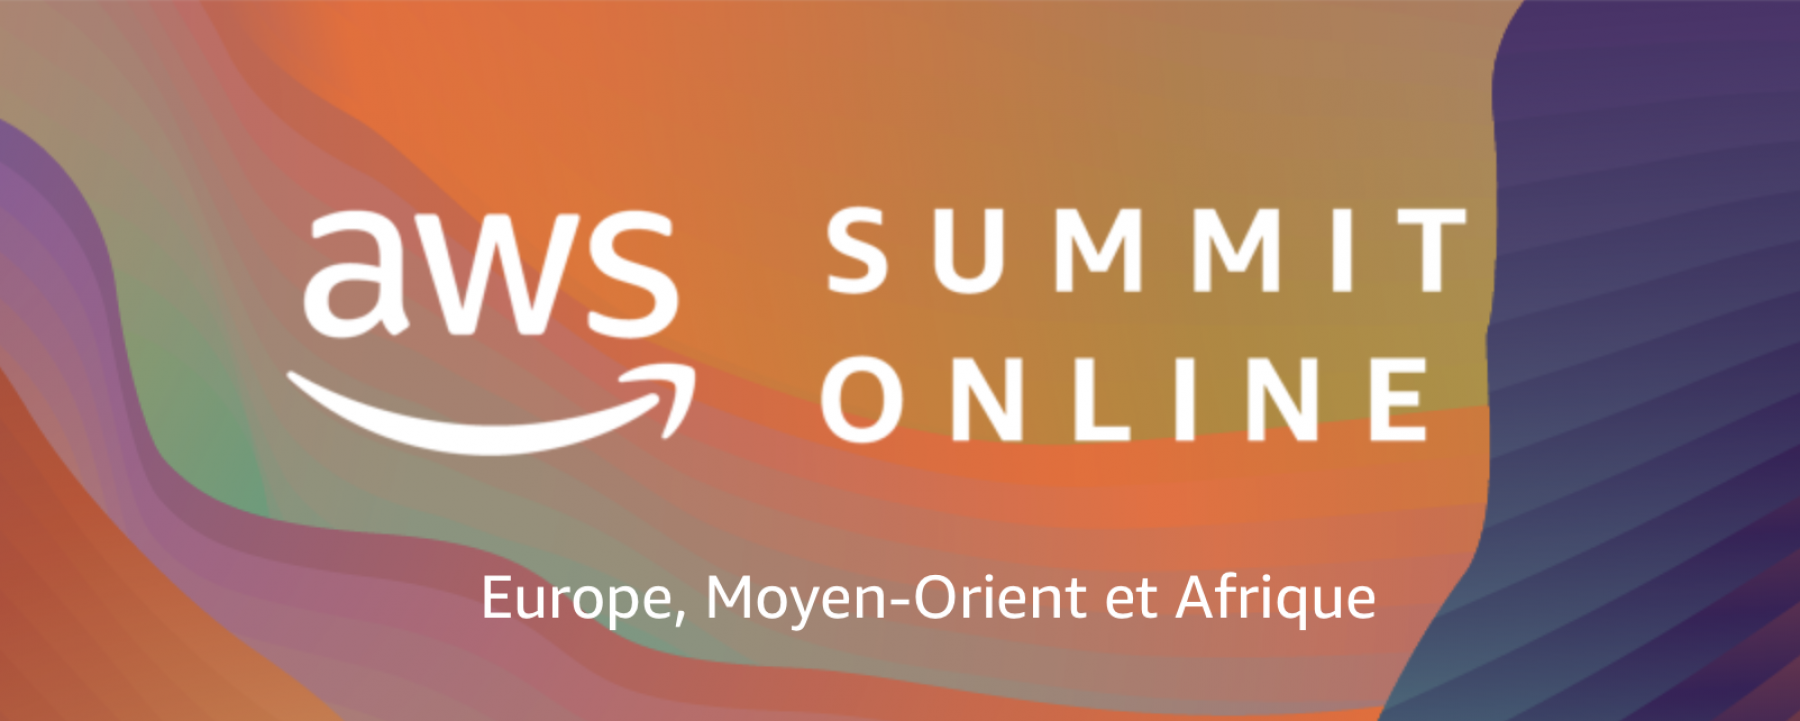 AWS Online summit 2020